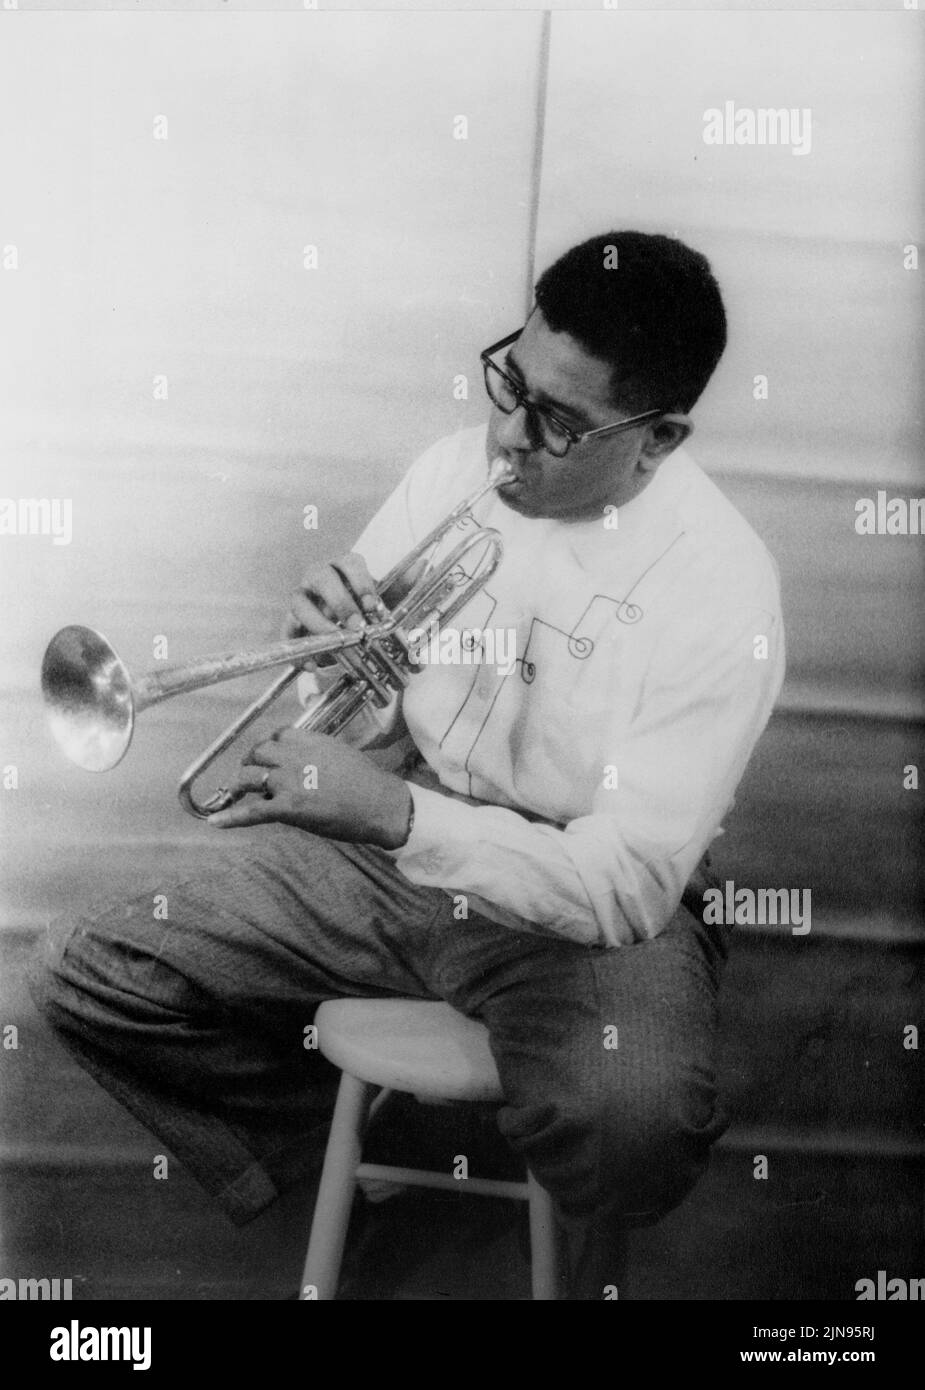 USA - 02 Dez 1955 - Porträt des Jazz Musiker Dizzy Gillespie (John birks) - Foto von Carl Van Vechten/Atlas Foto Archiv Stockfoto